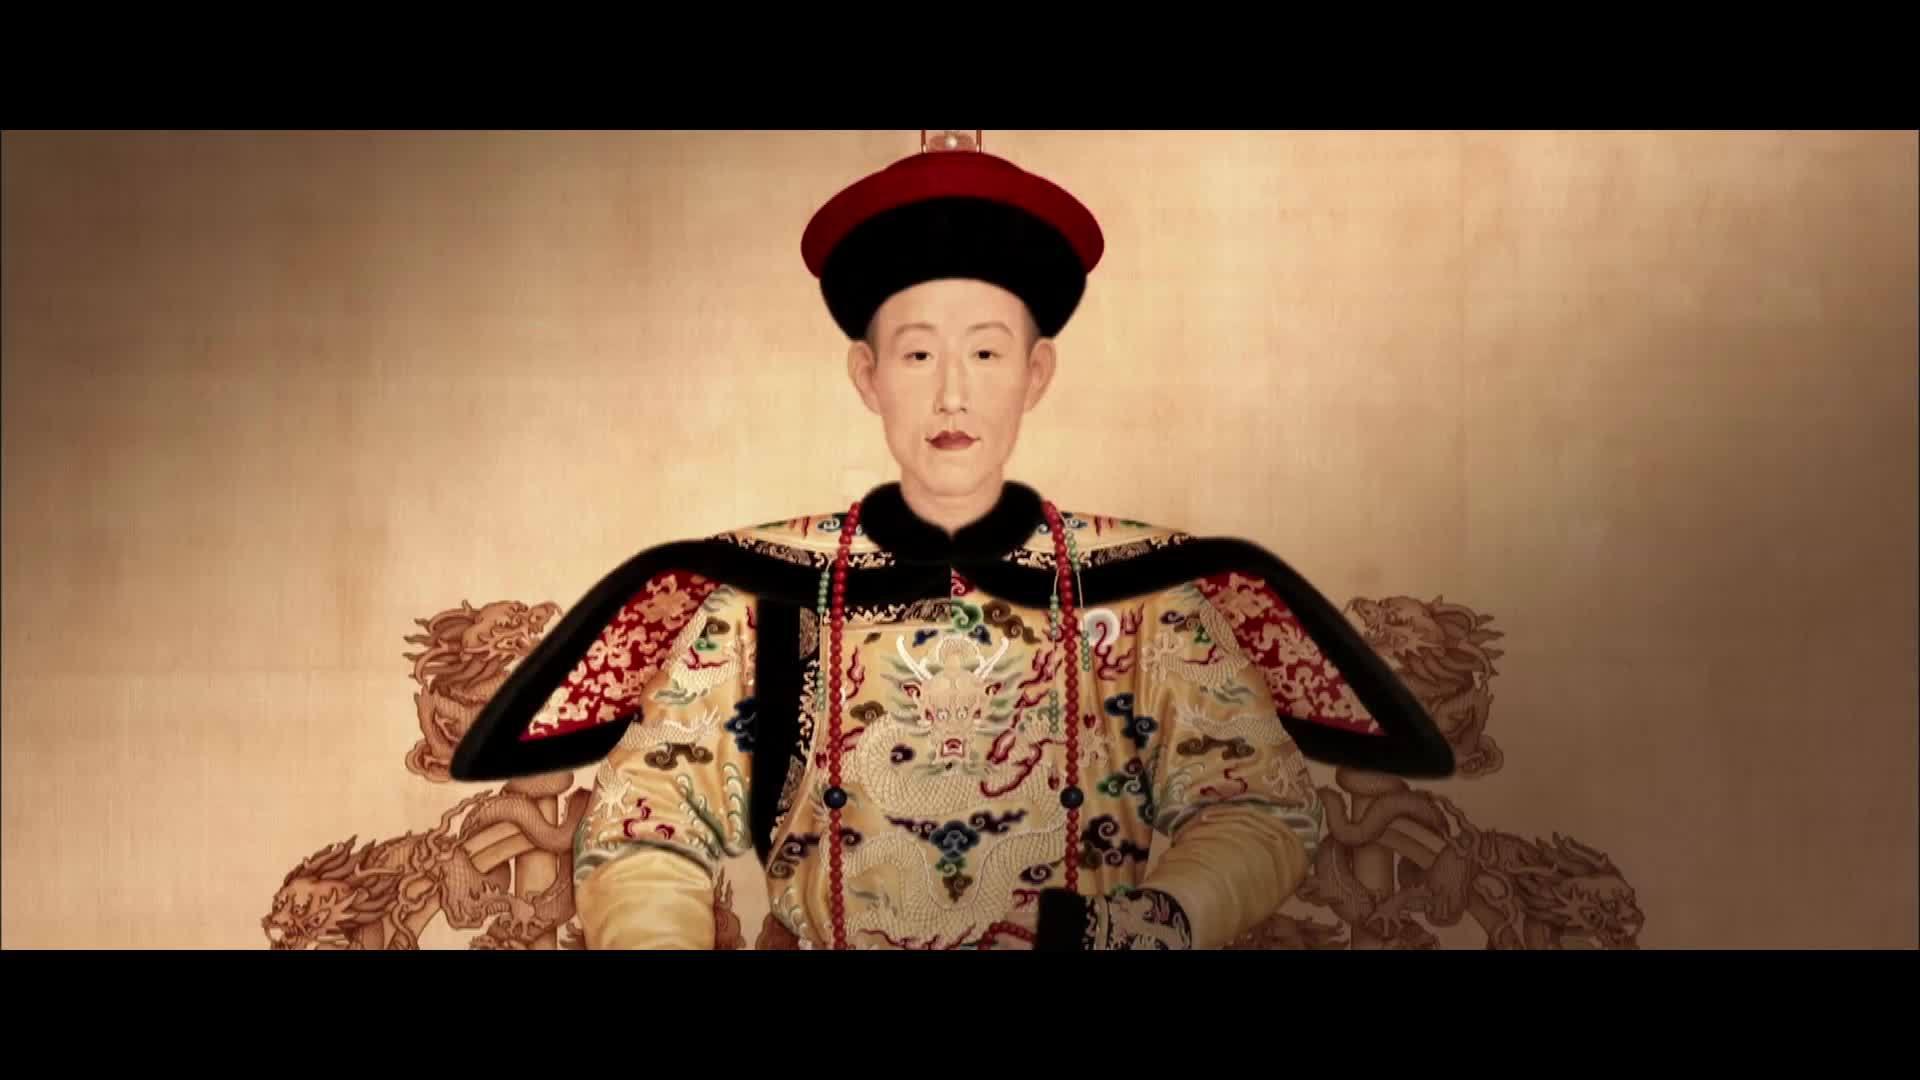 清朝最伟大的皇帝竟然是乾隆!一战功成,康熙和雍正都比不过?